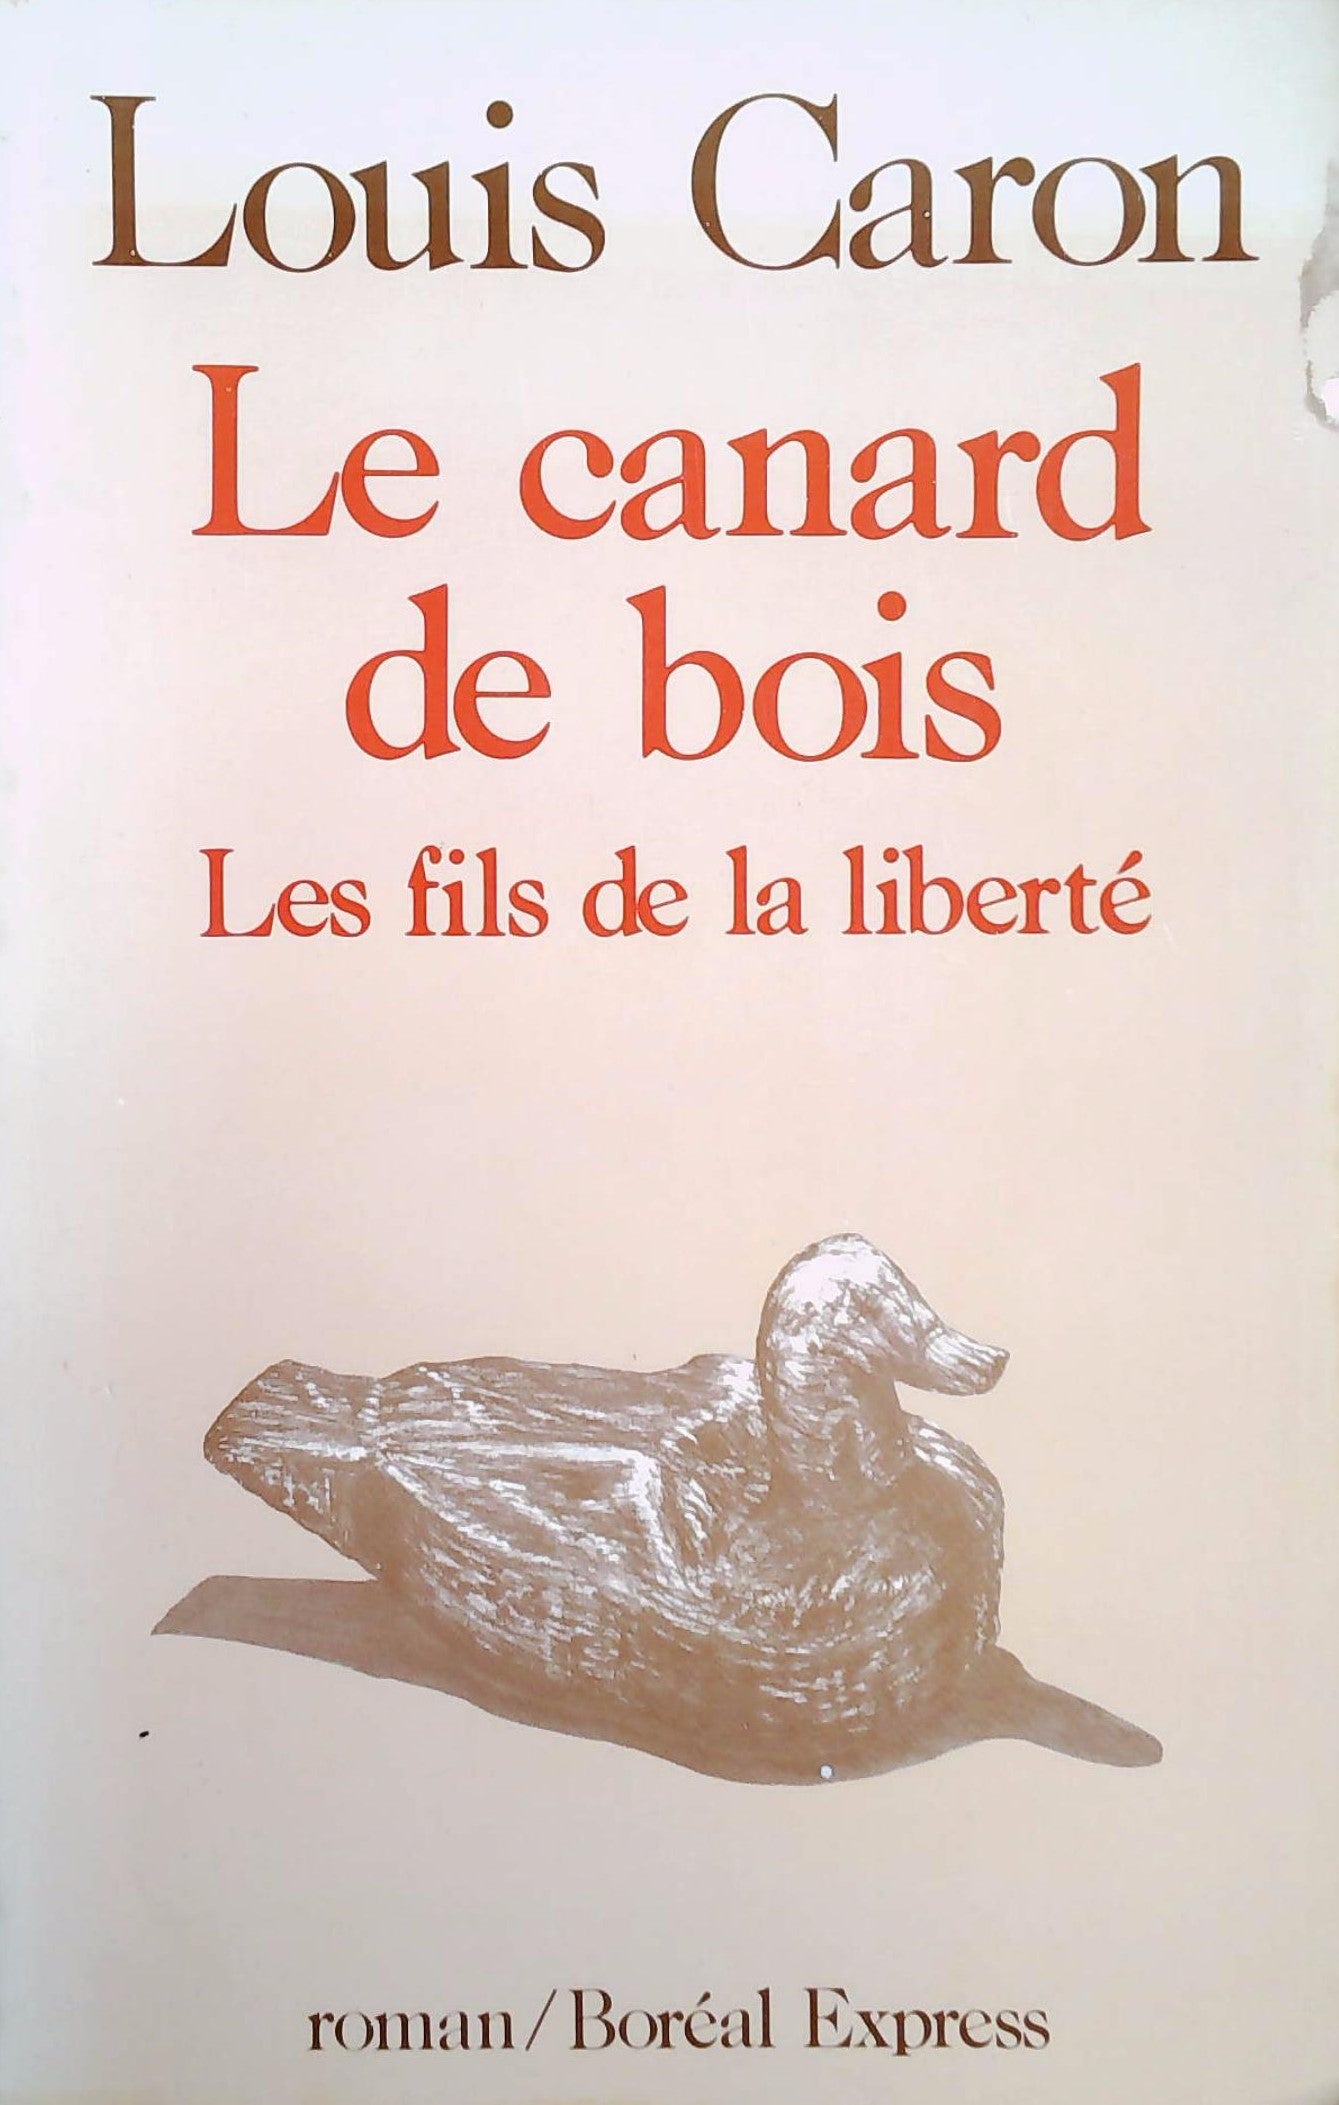 Livre ISBN 2890520315 Le canard de bois : Les fils de la liberté (Louis Caron)